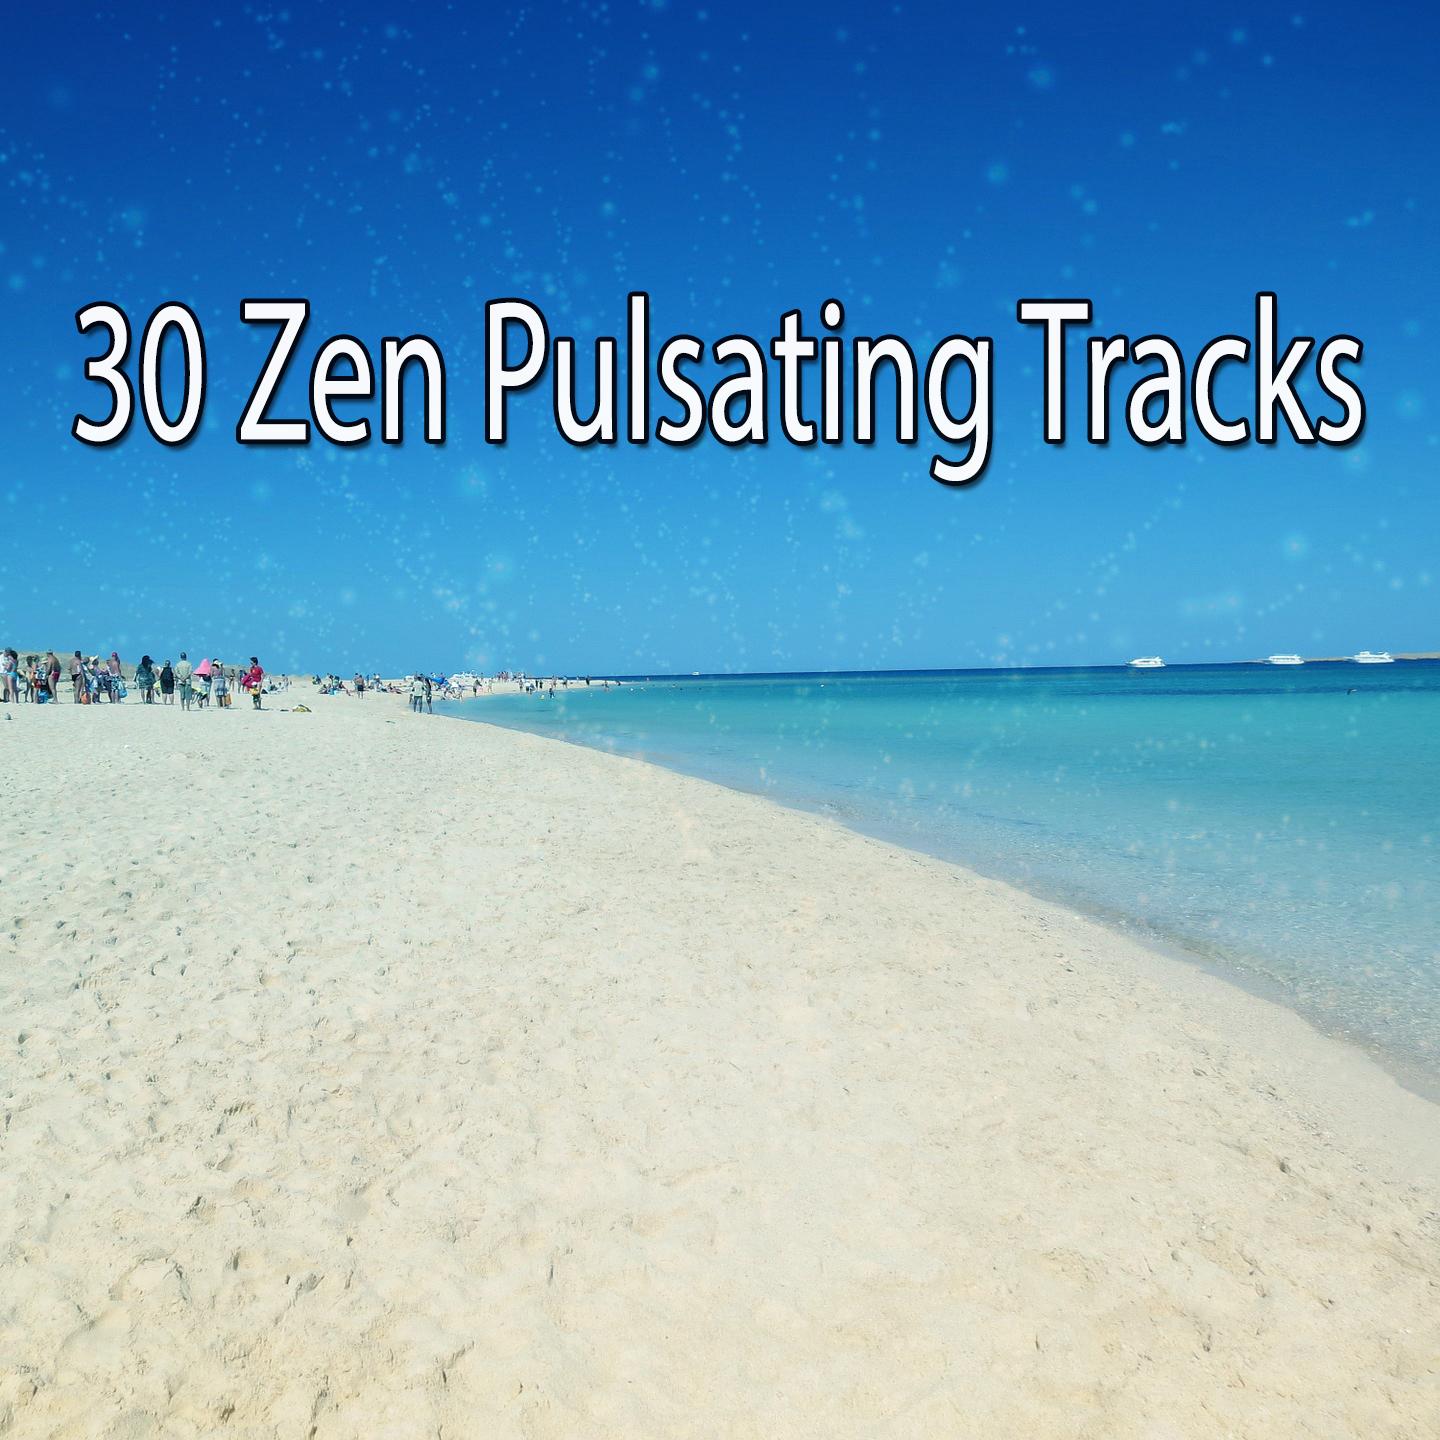 30 Zen Pulsating Tracks